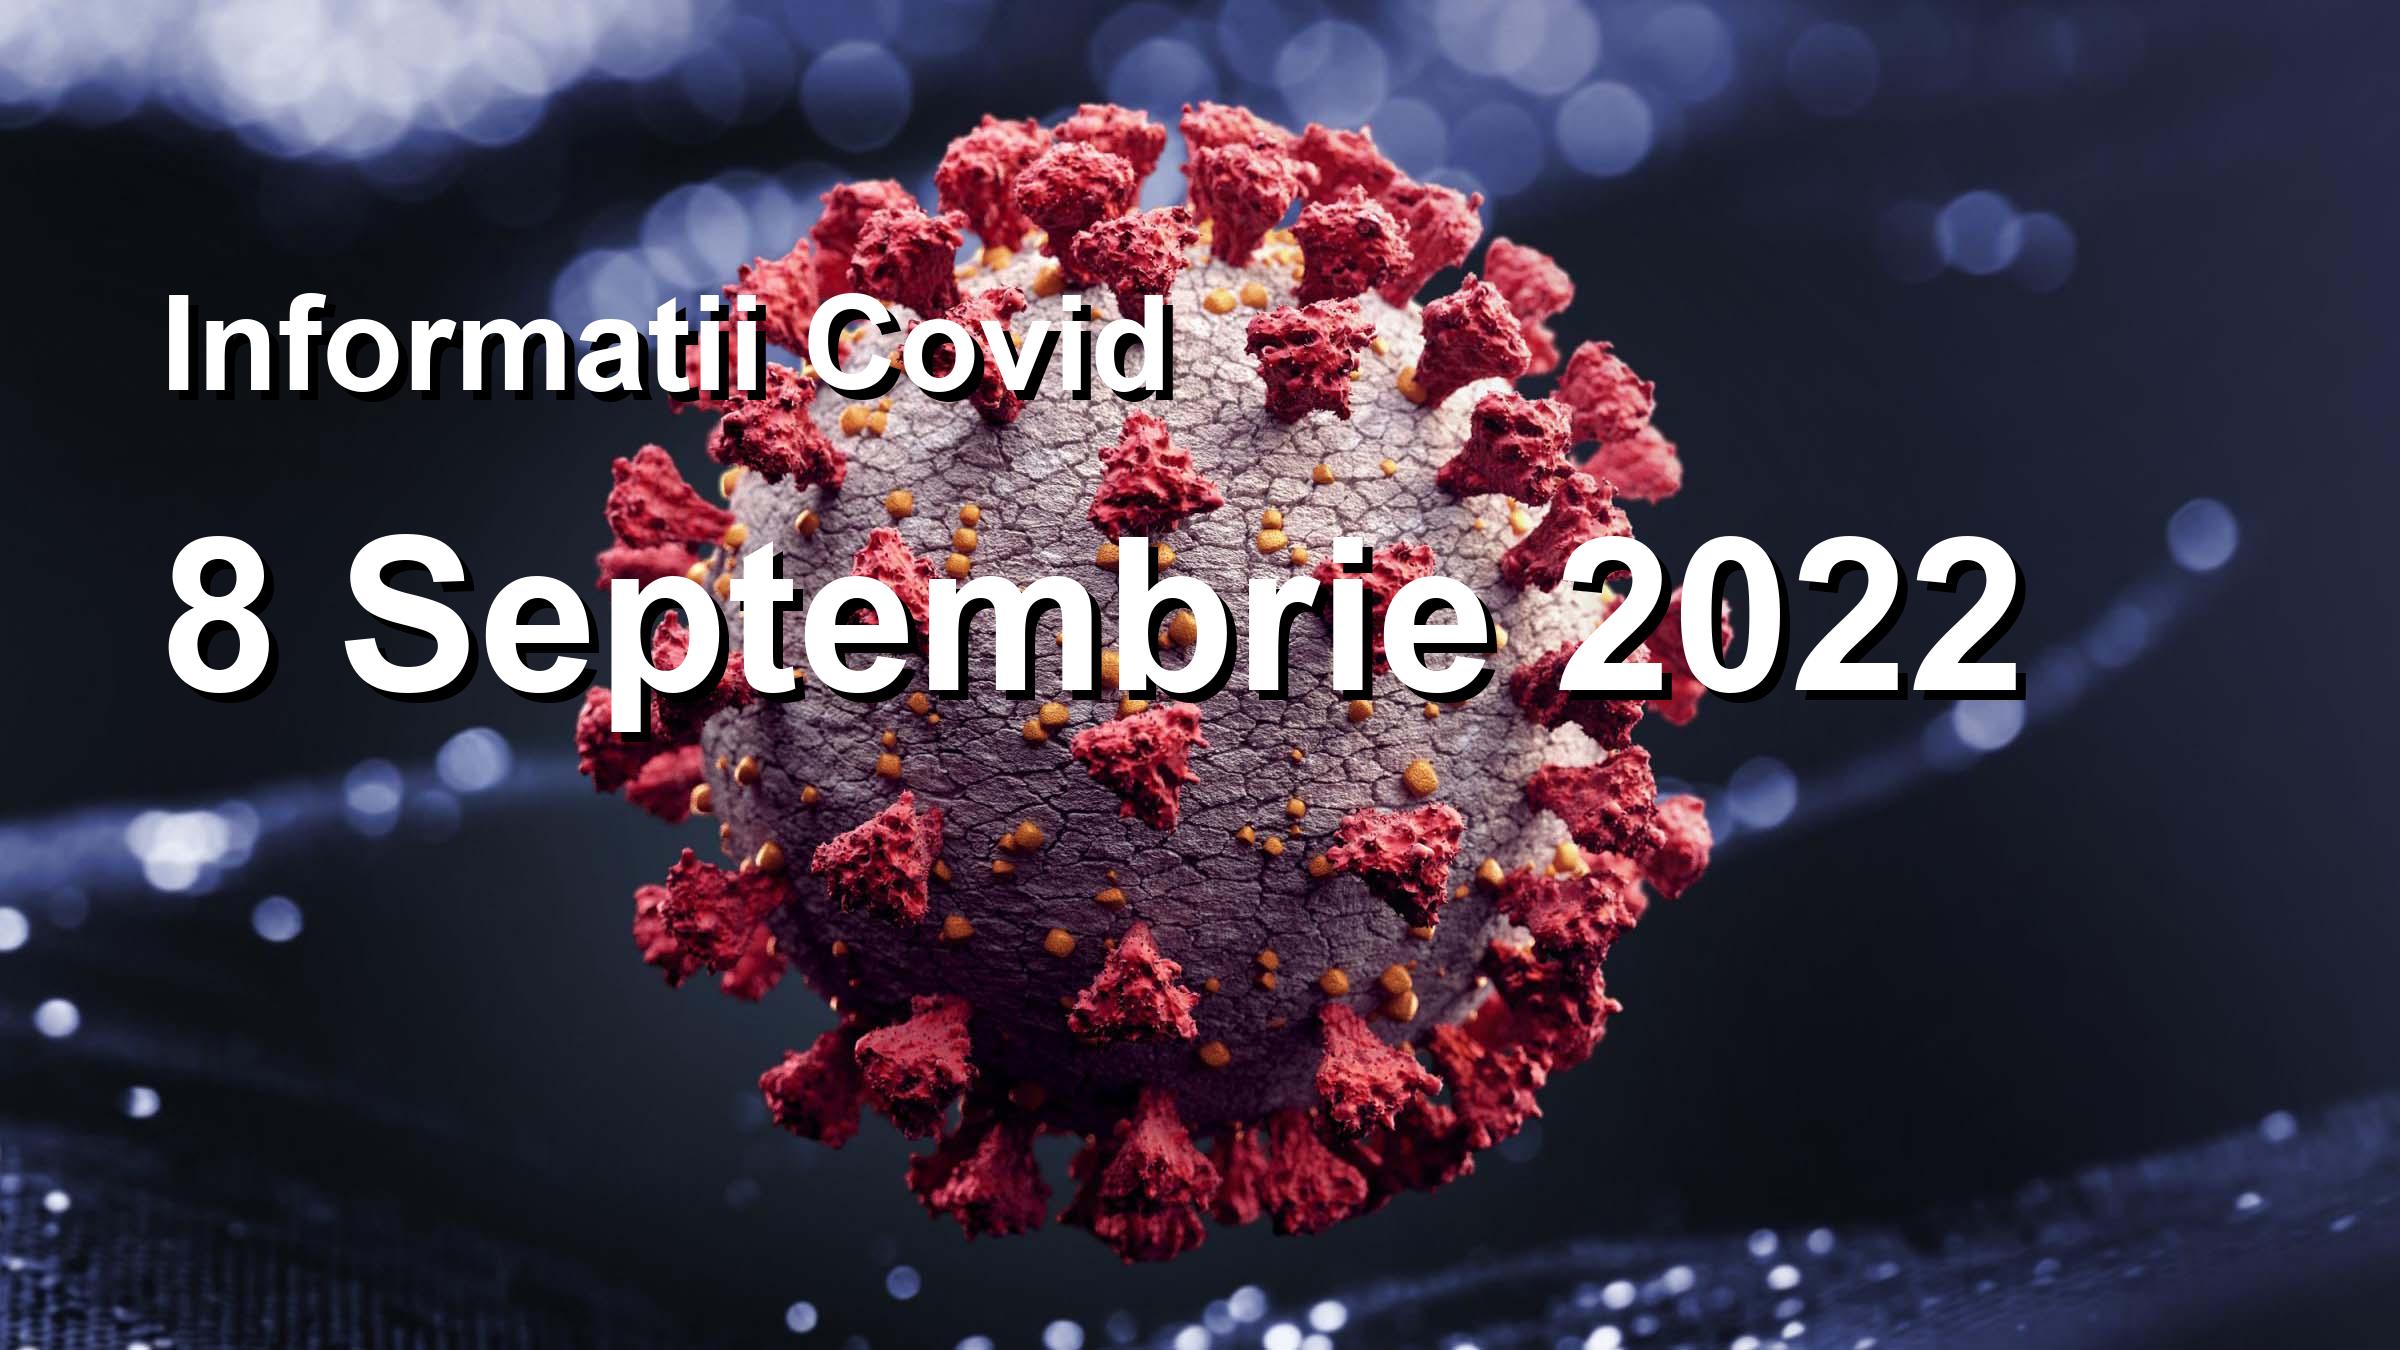 Informatii Covid-19 pentru 8 Septembrie 2022: 2060 infectari, 16540 teste. | Coronavirus Romania